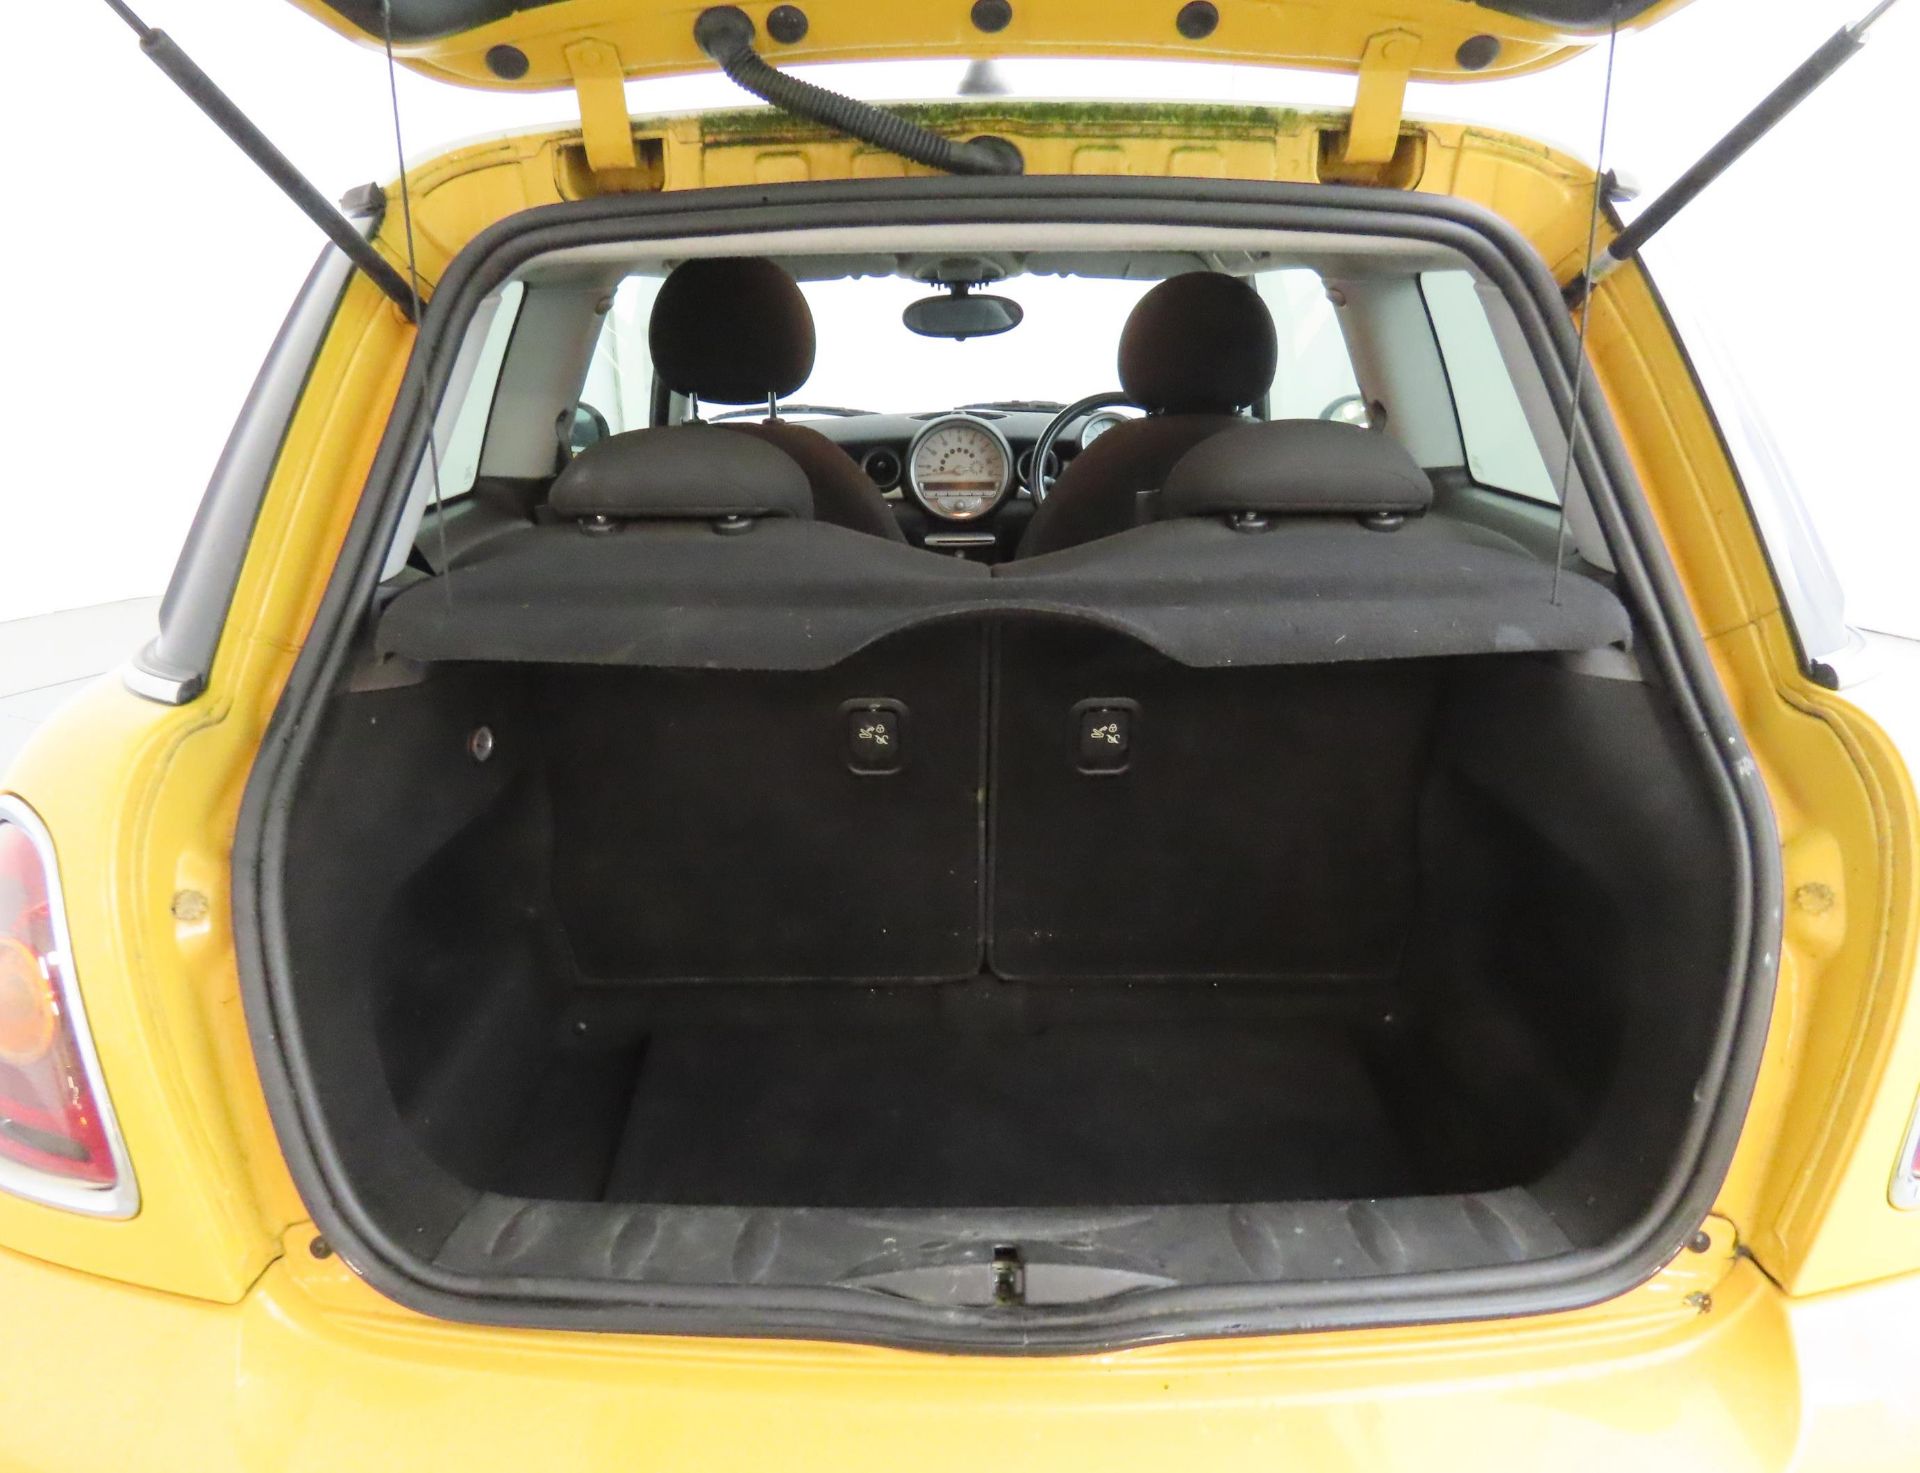 2008 Mini Cooper 1.6 D 3 Door Hatchback - CL505 - NO VAT ON THE HAMMER - Location: Corby, Northampto - Image 6 of 11